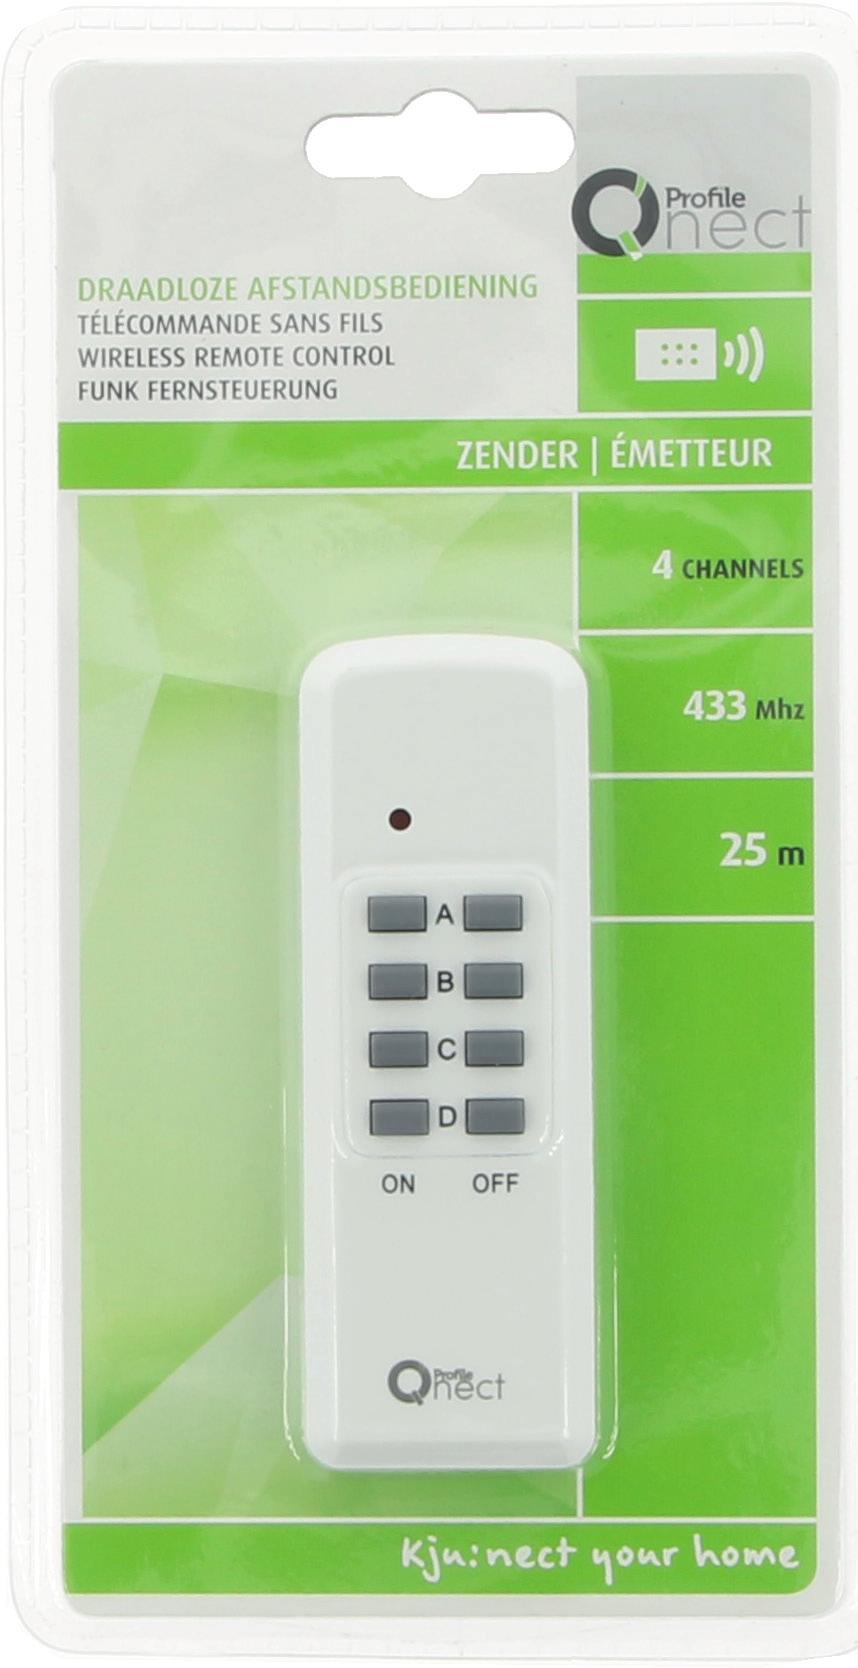 De Wifi Smart Plug is zeer herkenbaar aan zijn groene kleur en de aangepaste verpakking.